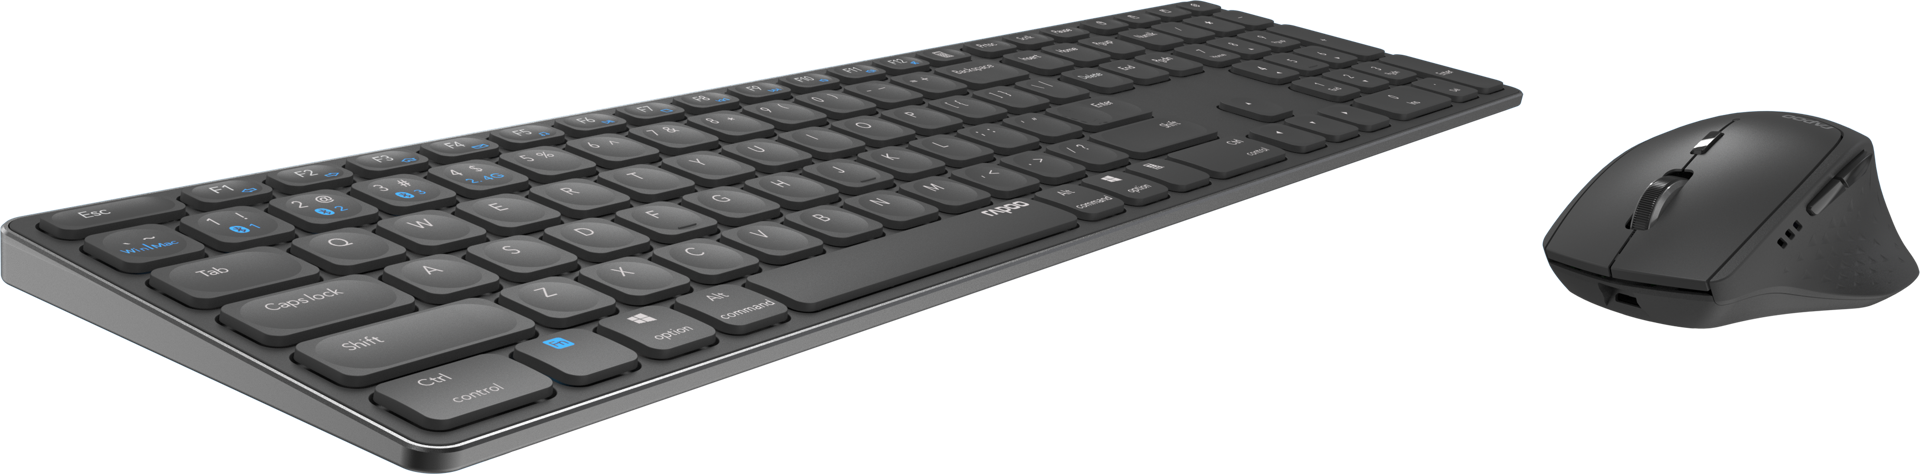 کیبورد و ماوس بدون سیم دو حالته رپو مدل Dual Mode Desktop Keyboard & Mouse Rapoo 9800 M